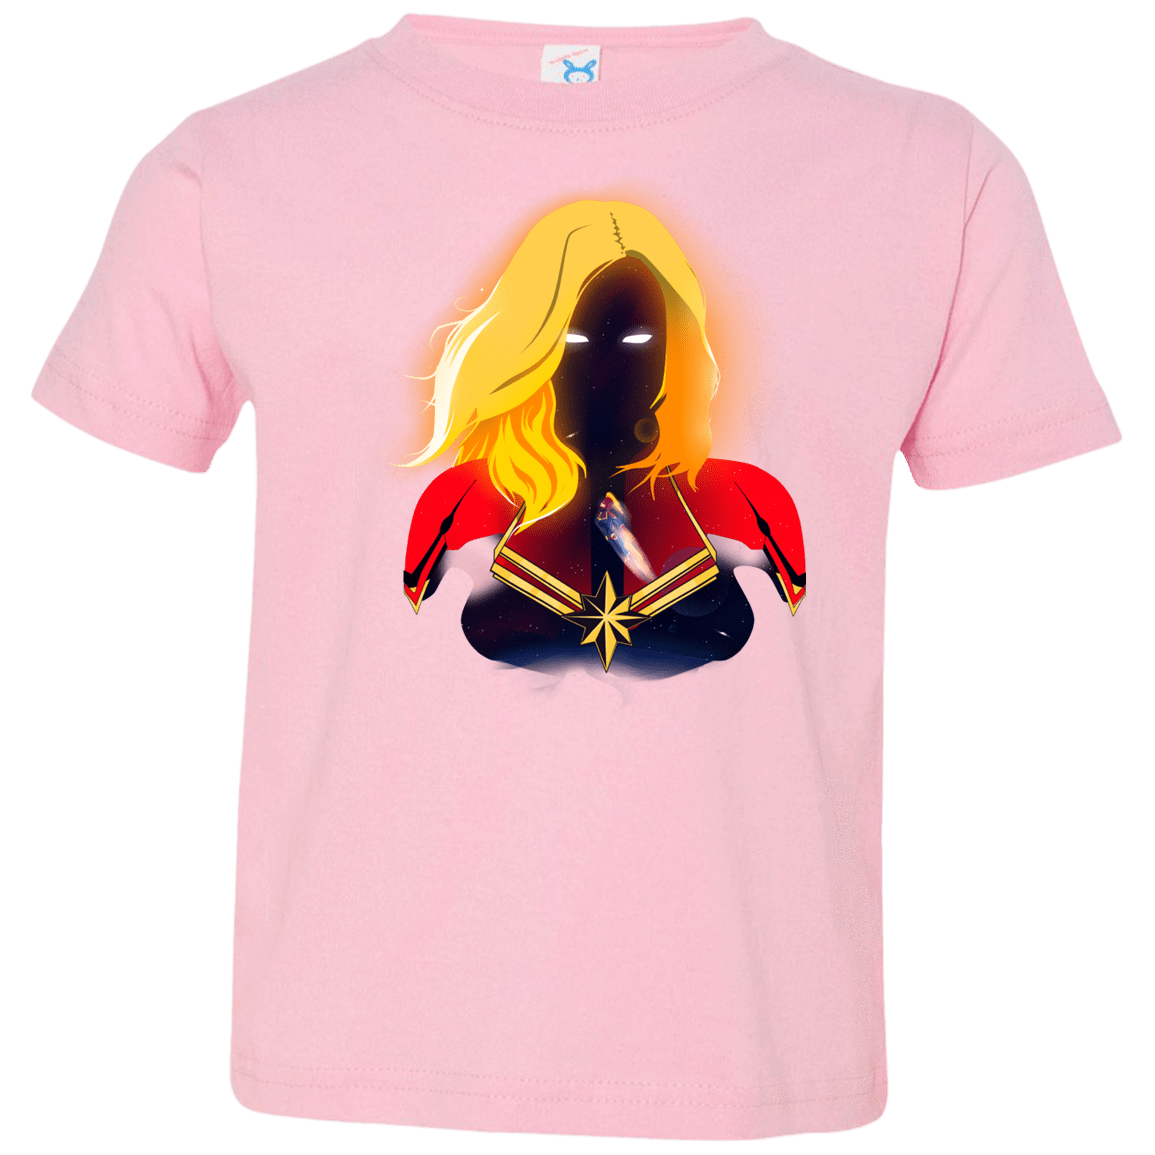 T-Shirts Pink / 2T M A R V E L Toddler Premium T-Shirt